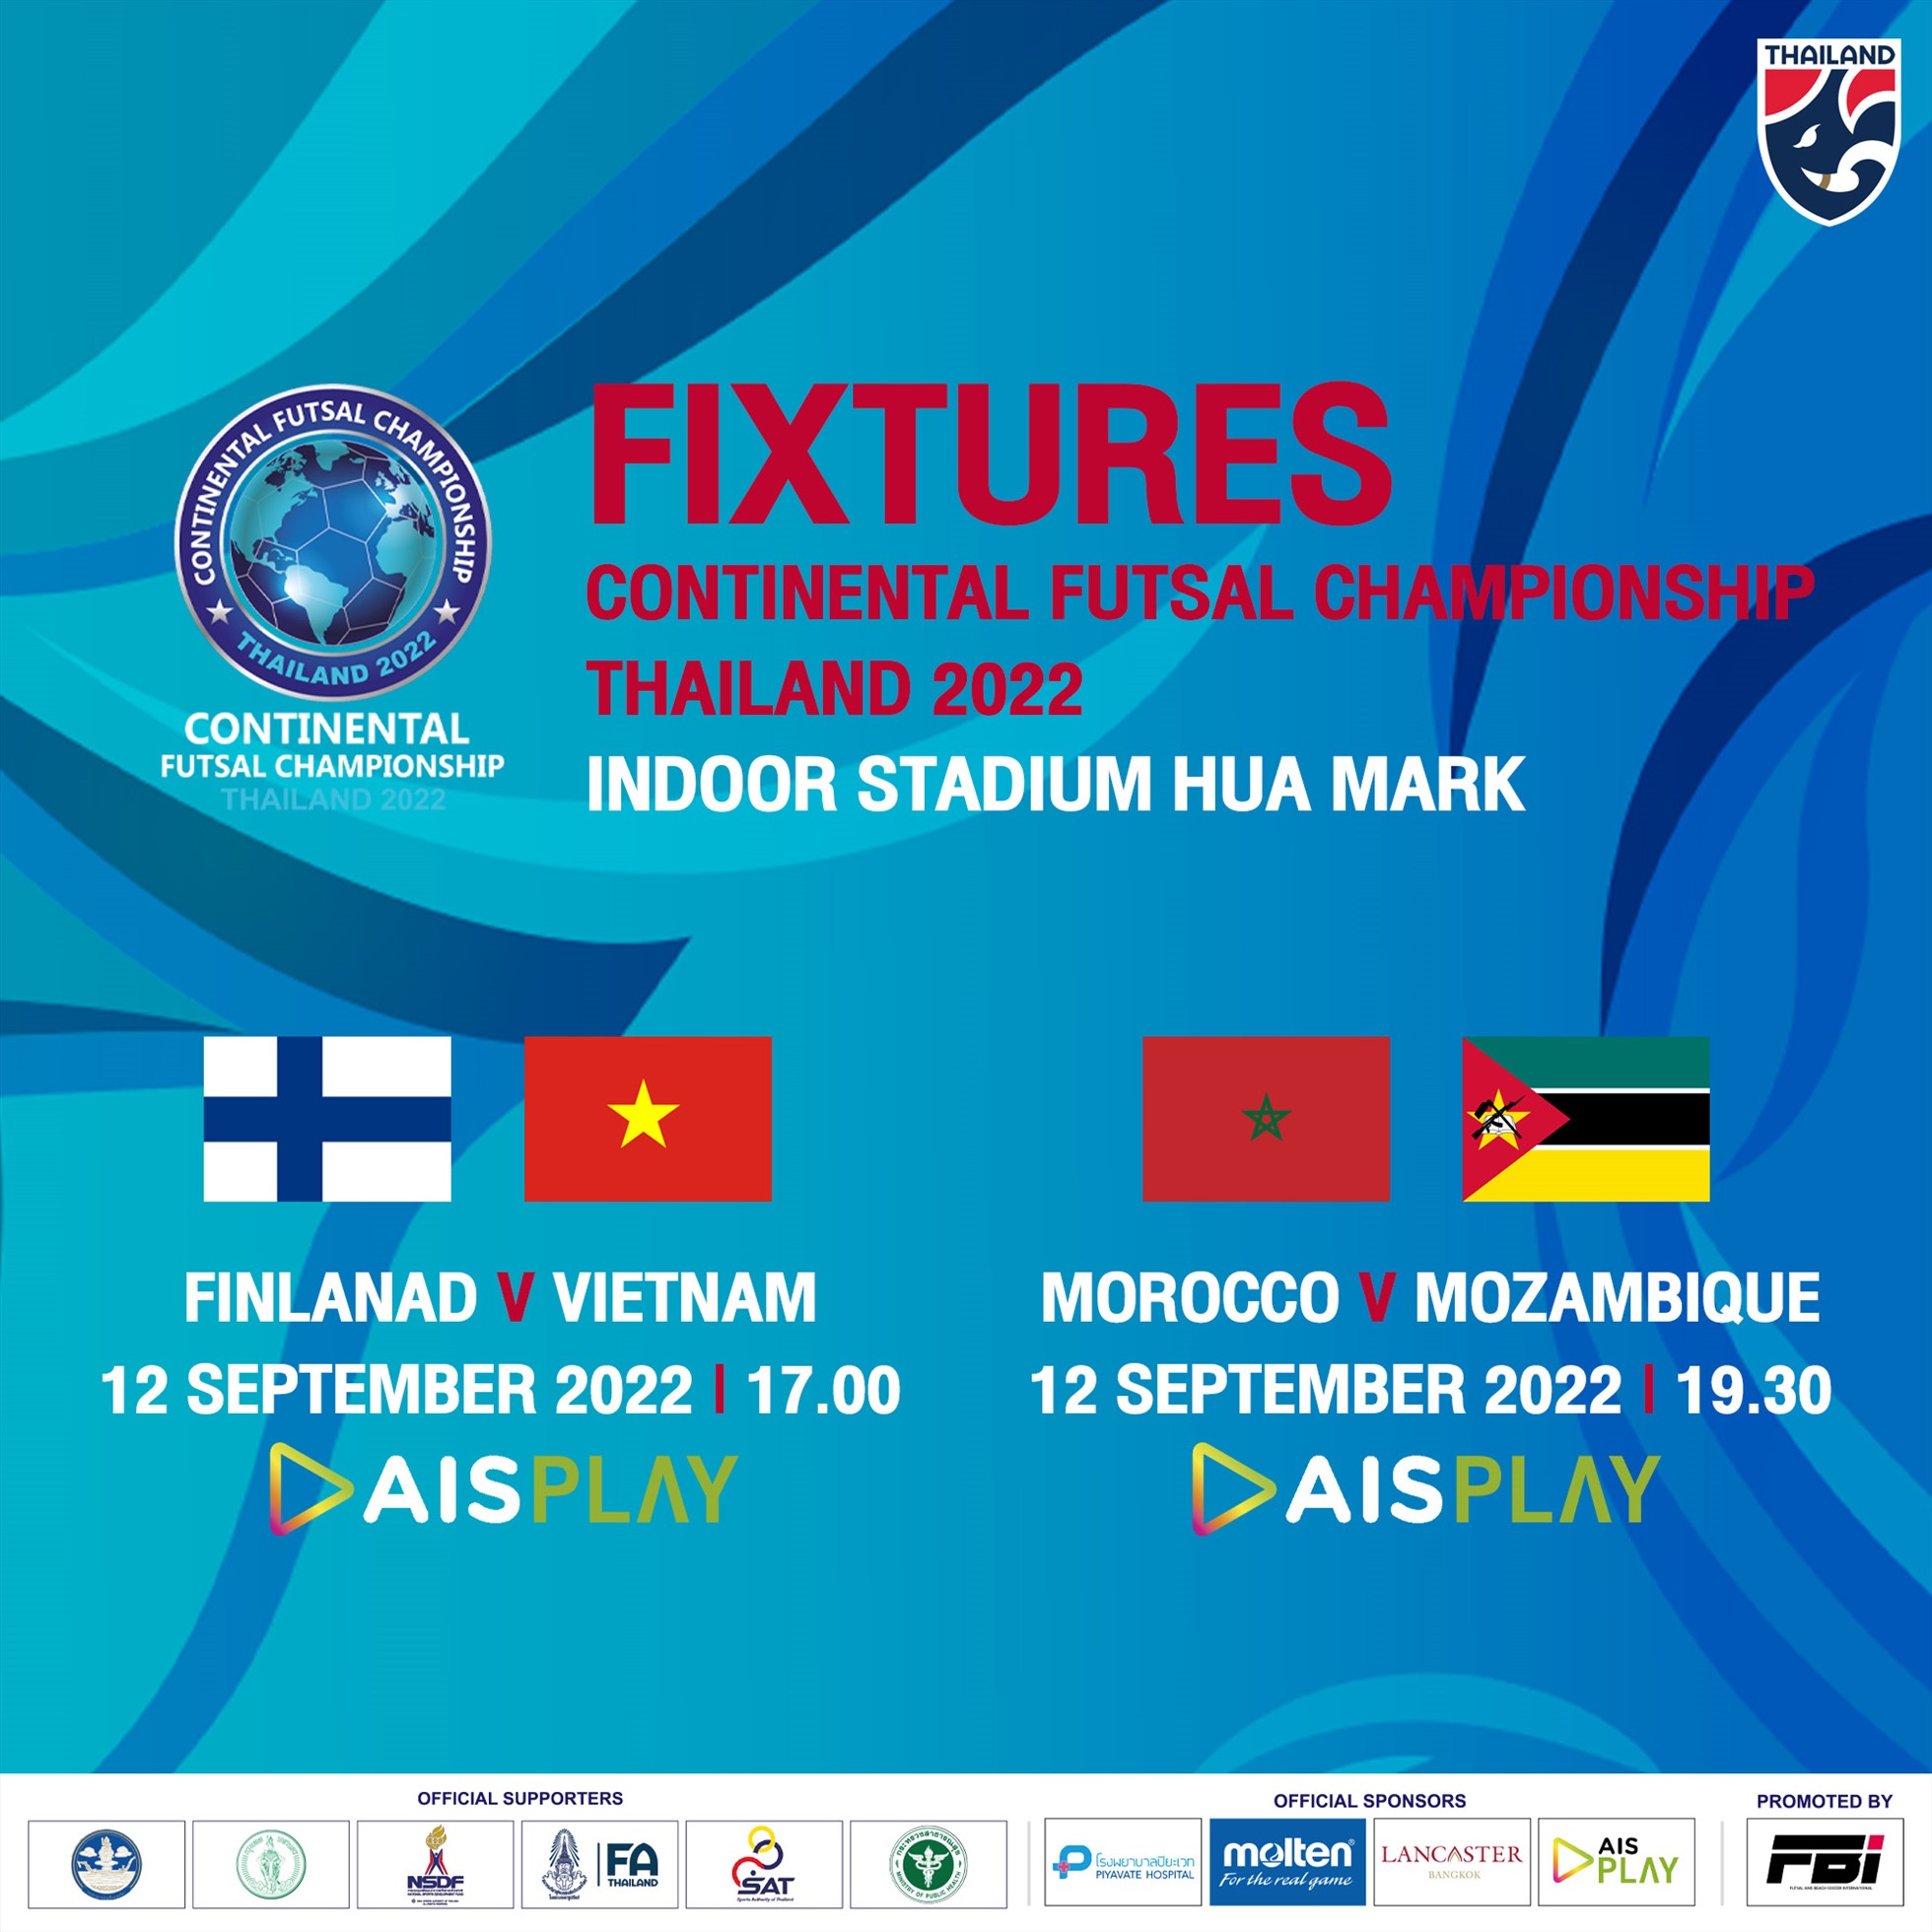 Ngoài trận tuyển futsal Việt Nam vs Phần Lan, trong ngày 12.9 còn có trận Ma-Rốc vs Mozambique. Ảnh: Futsal Thailand